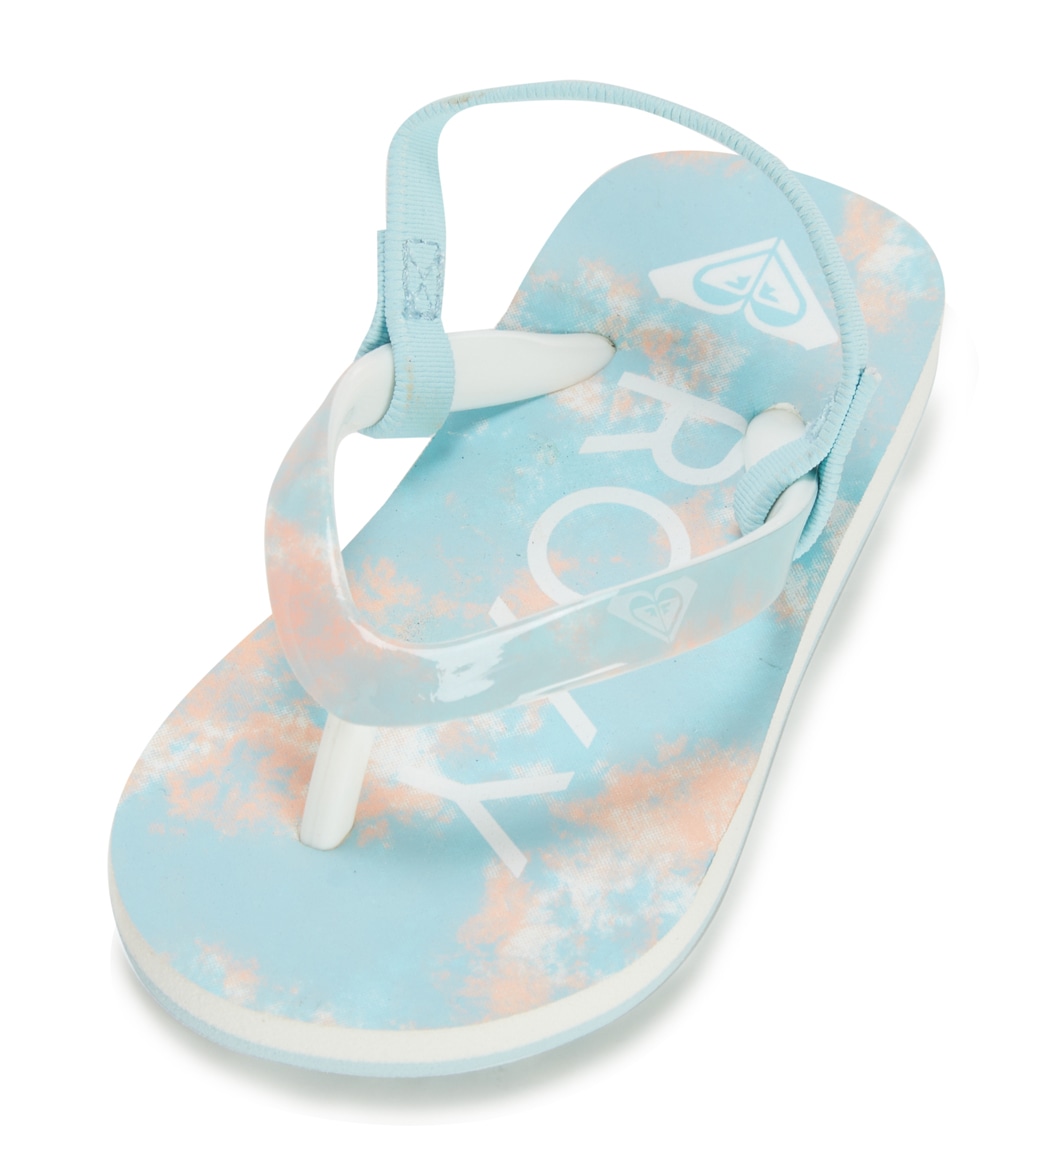 Roxy Girls' Pebbles Vi Sandals - Blue Coral 10 - Swimoutlet.com